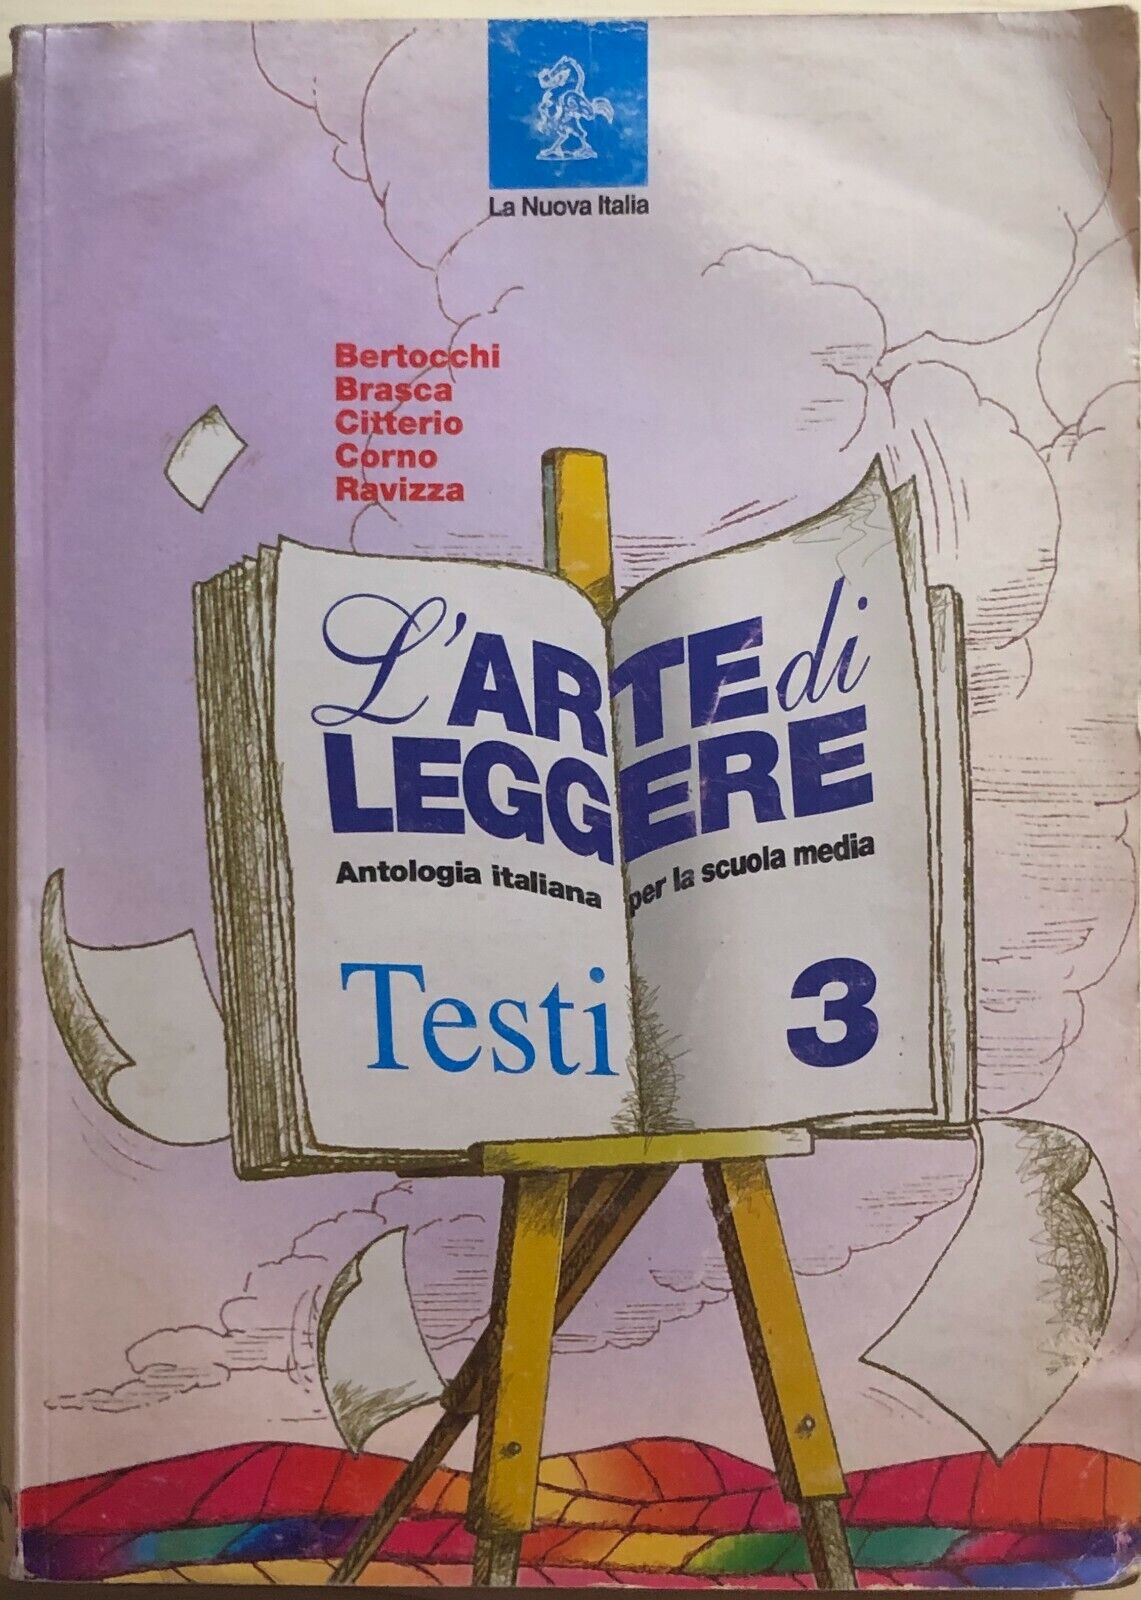 L'arte di leggere Testi 3 di Aa.vv., 2002, La Nuova Italia